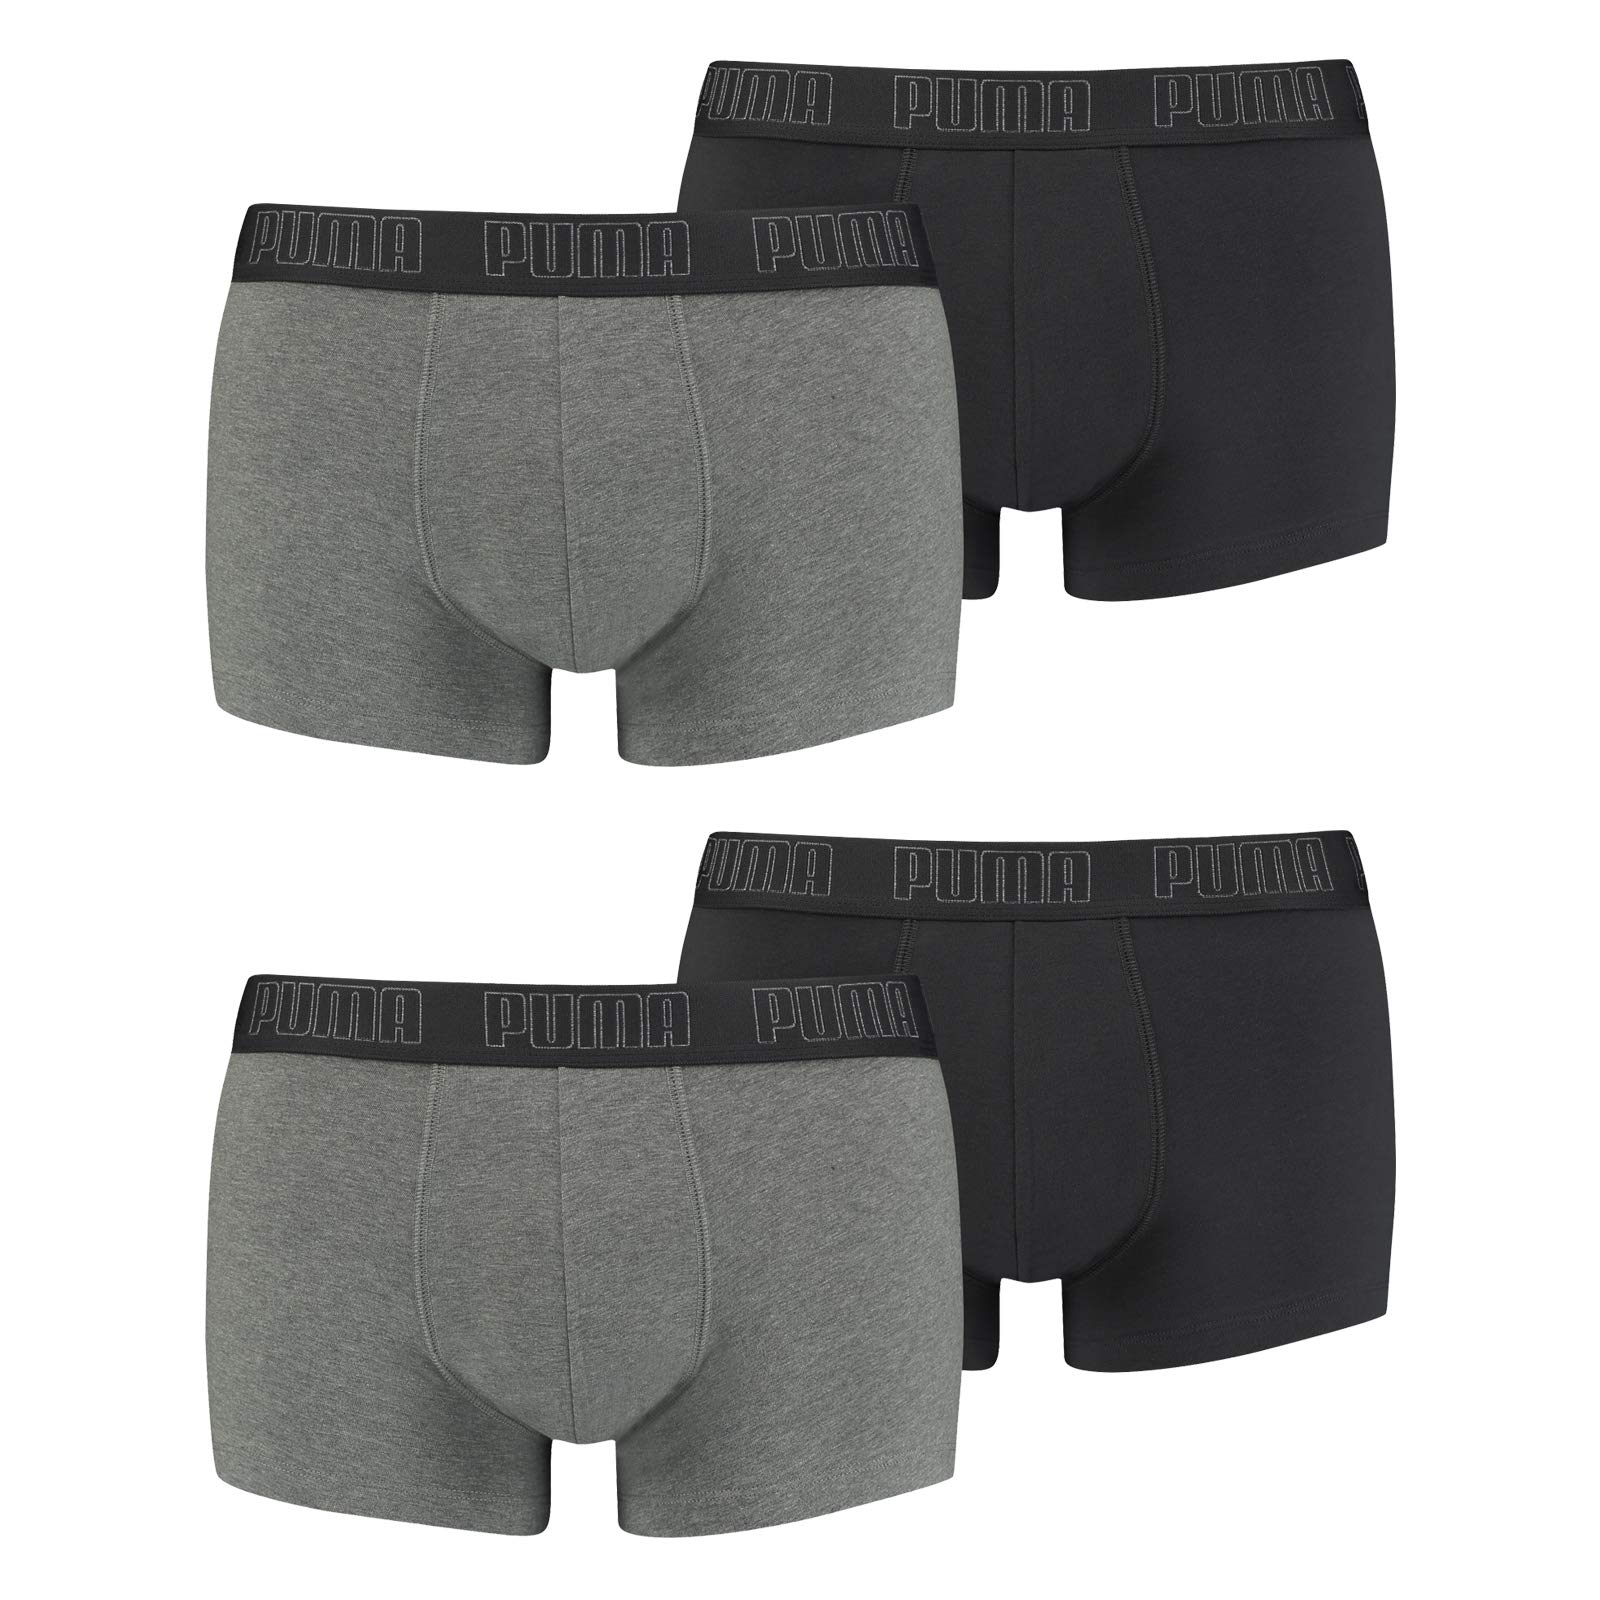 PUMA Herren Shortboxer Unterhosen Trunks 4er Pack, Wäschegröße:S, Artikel:-008 Dark Grey Melange/Black